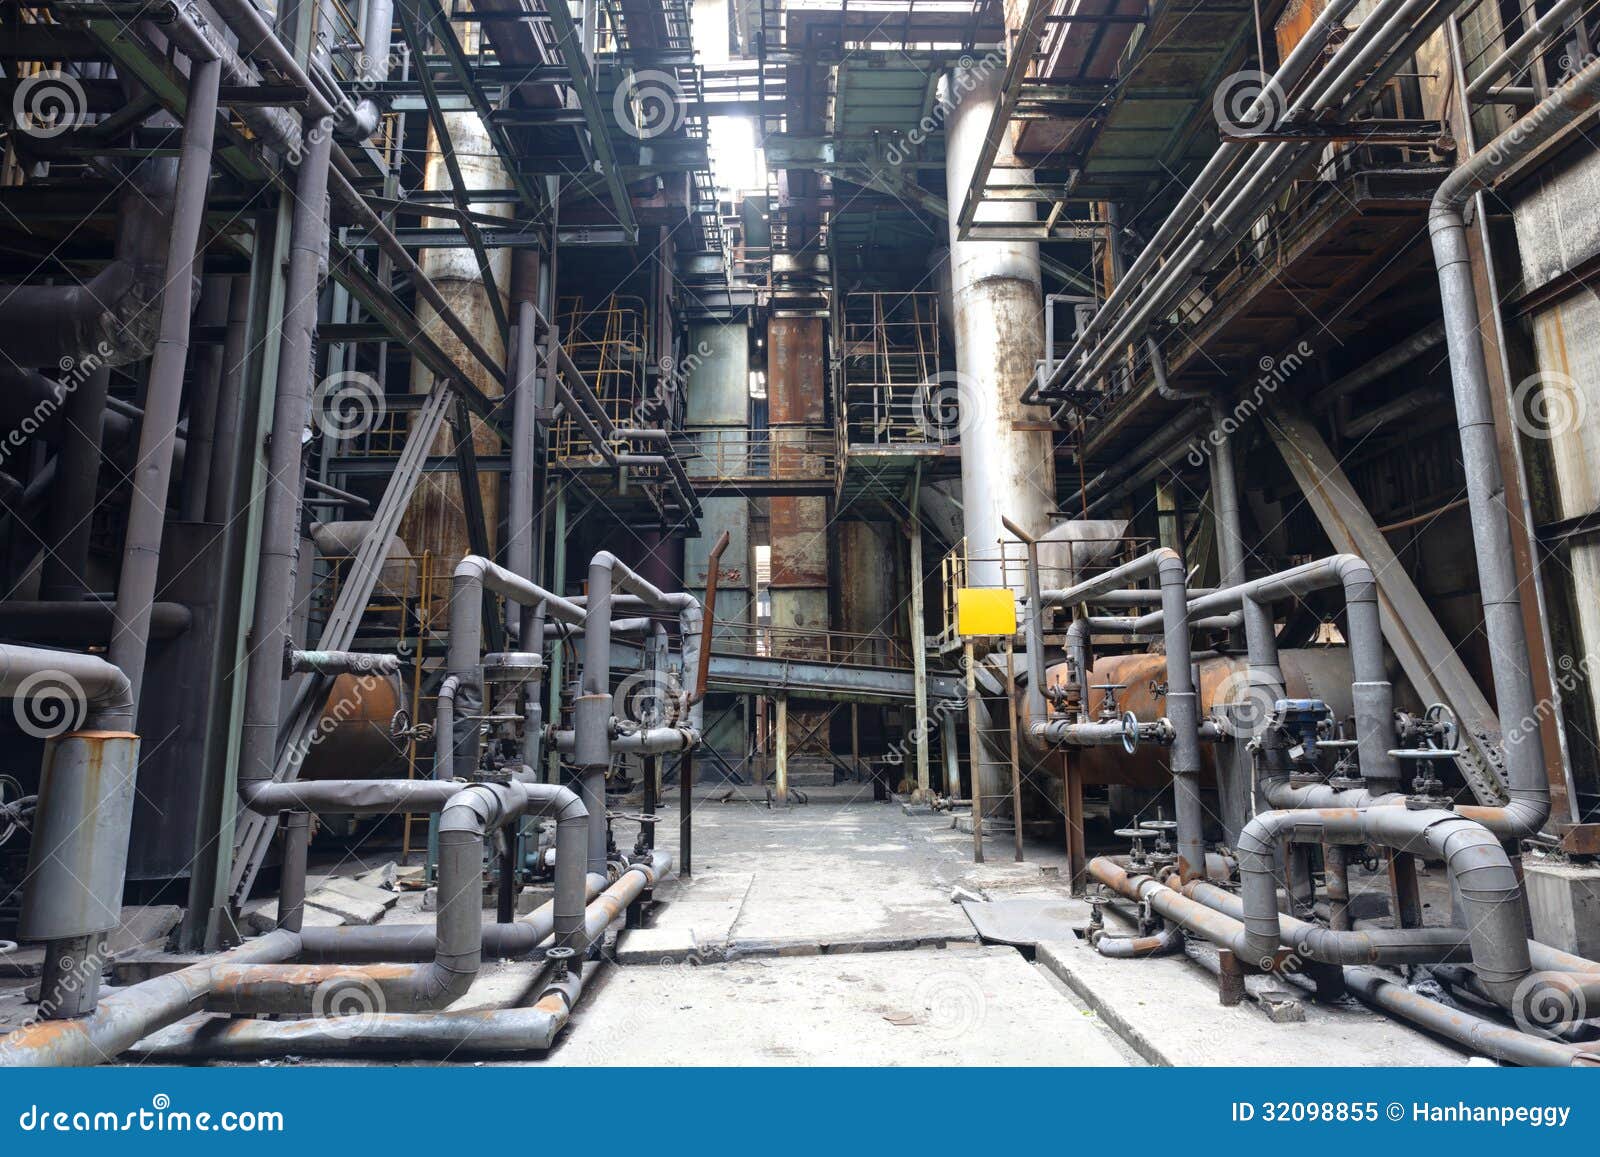 steel-mill-interior-pipes-valves-32098855.jpg